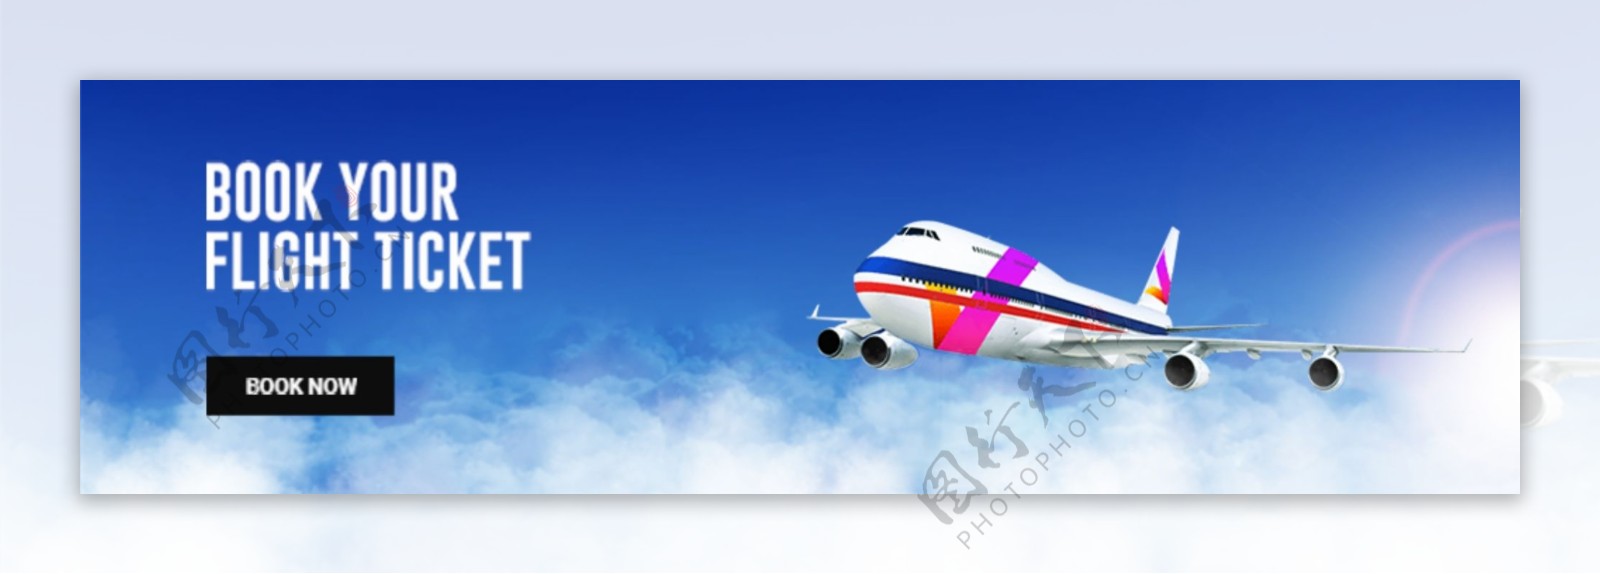 旅行公司飞机案例网页界面PSD模板